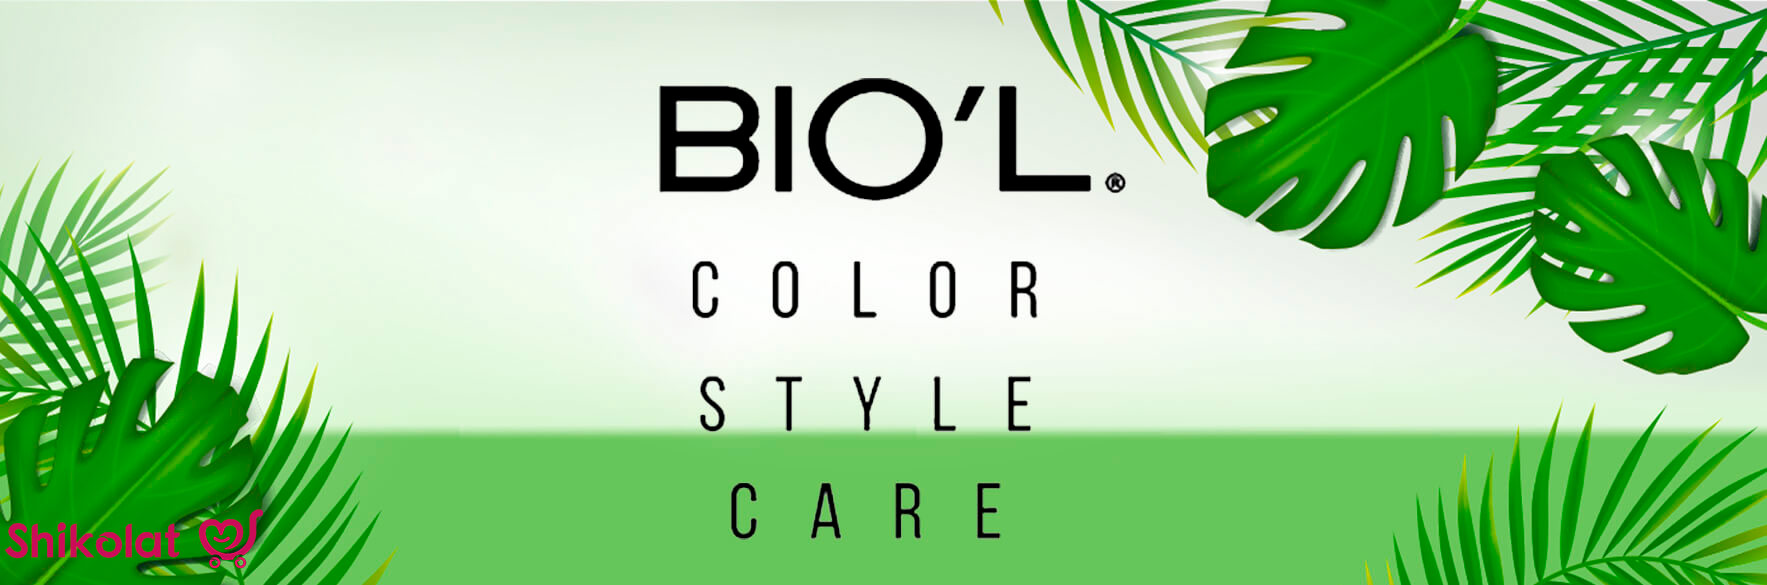 محصولات برند بیول Biol